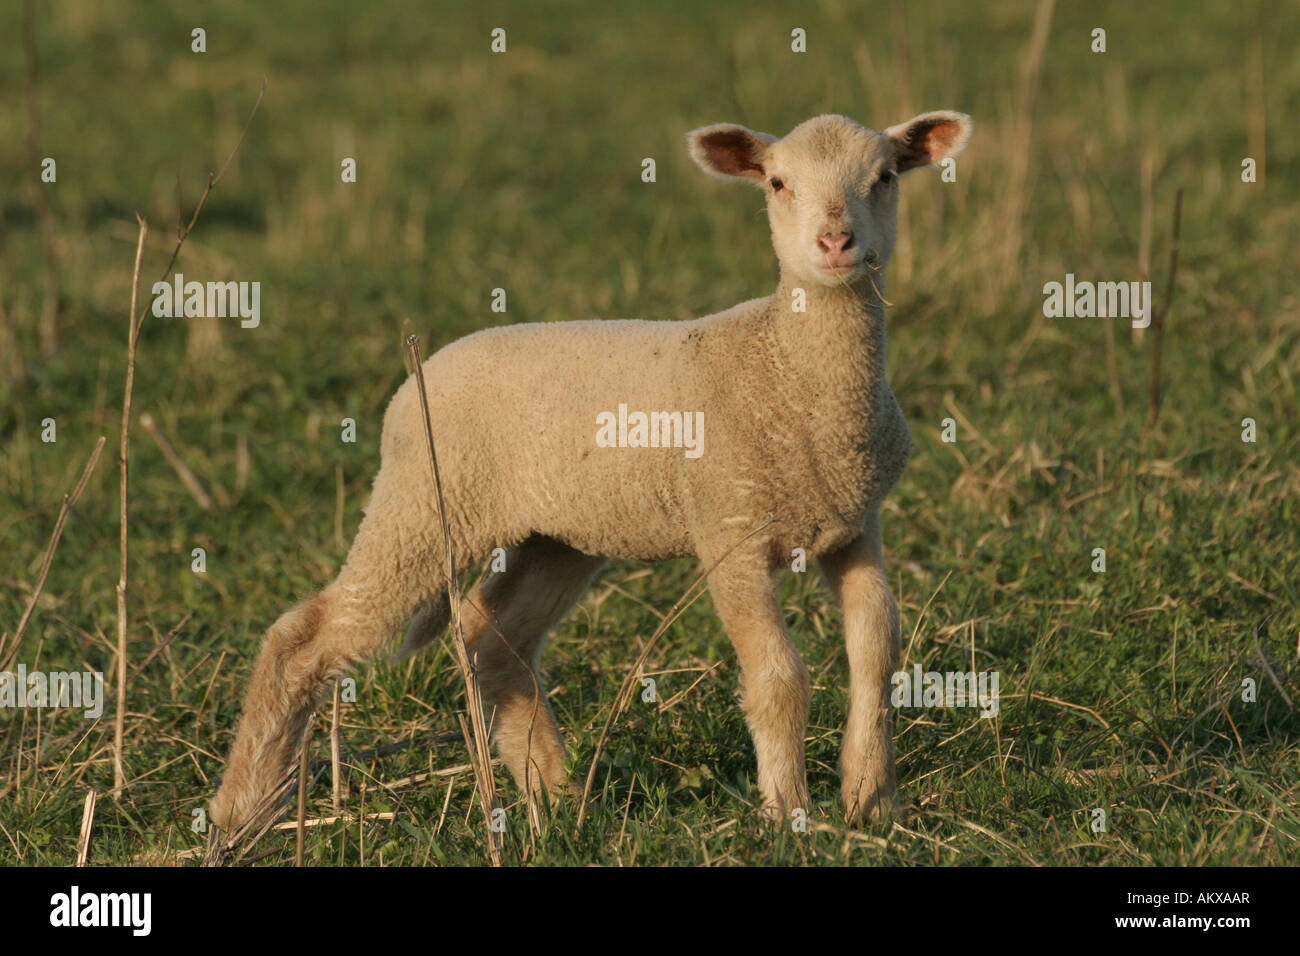 Young merino sheep Stock Photo